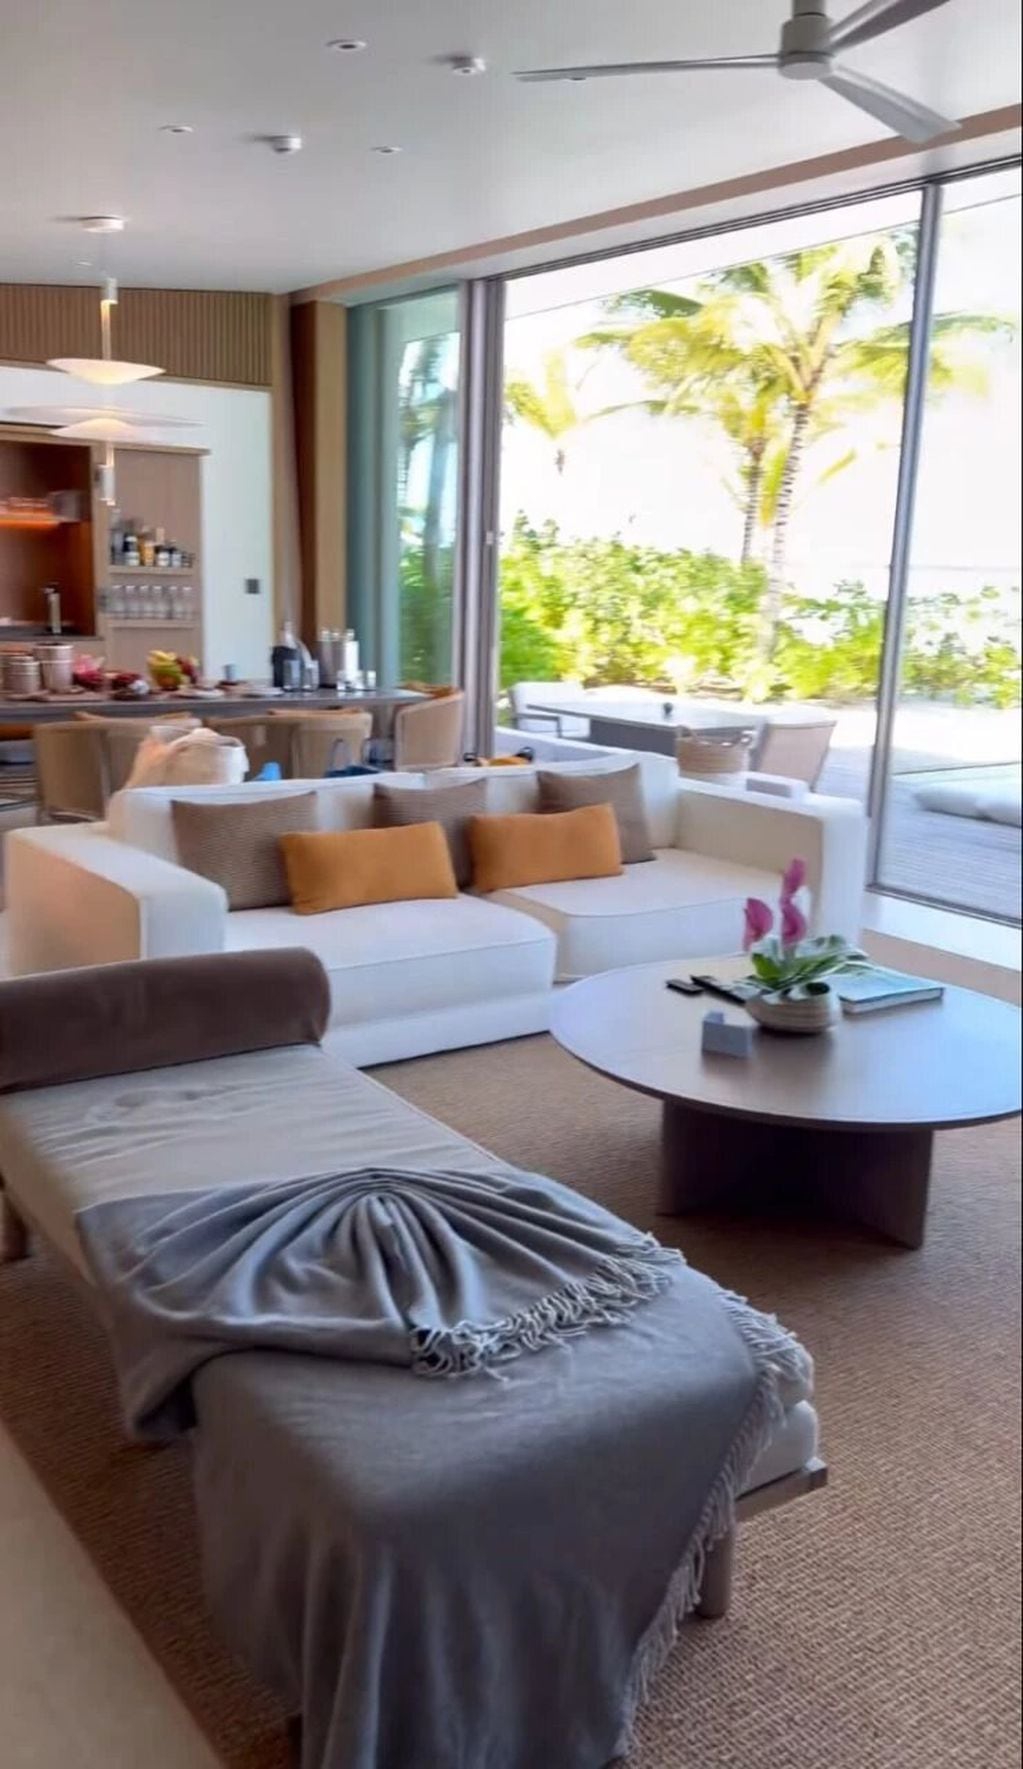 El lujoso hotel de Maldivas donde se hospeda Wanda Nara con su familia.